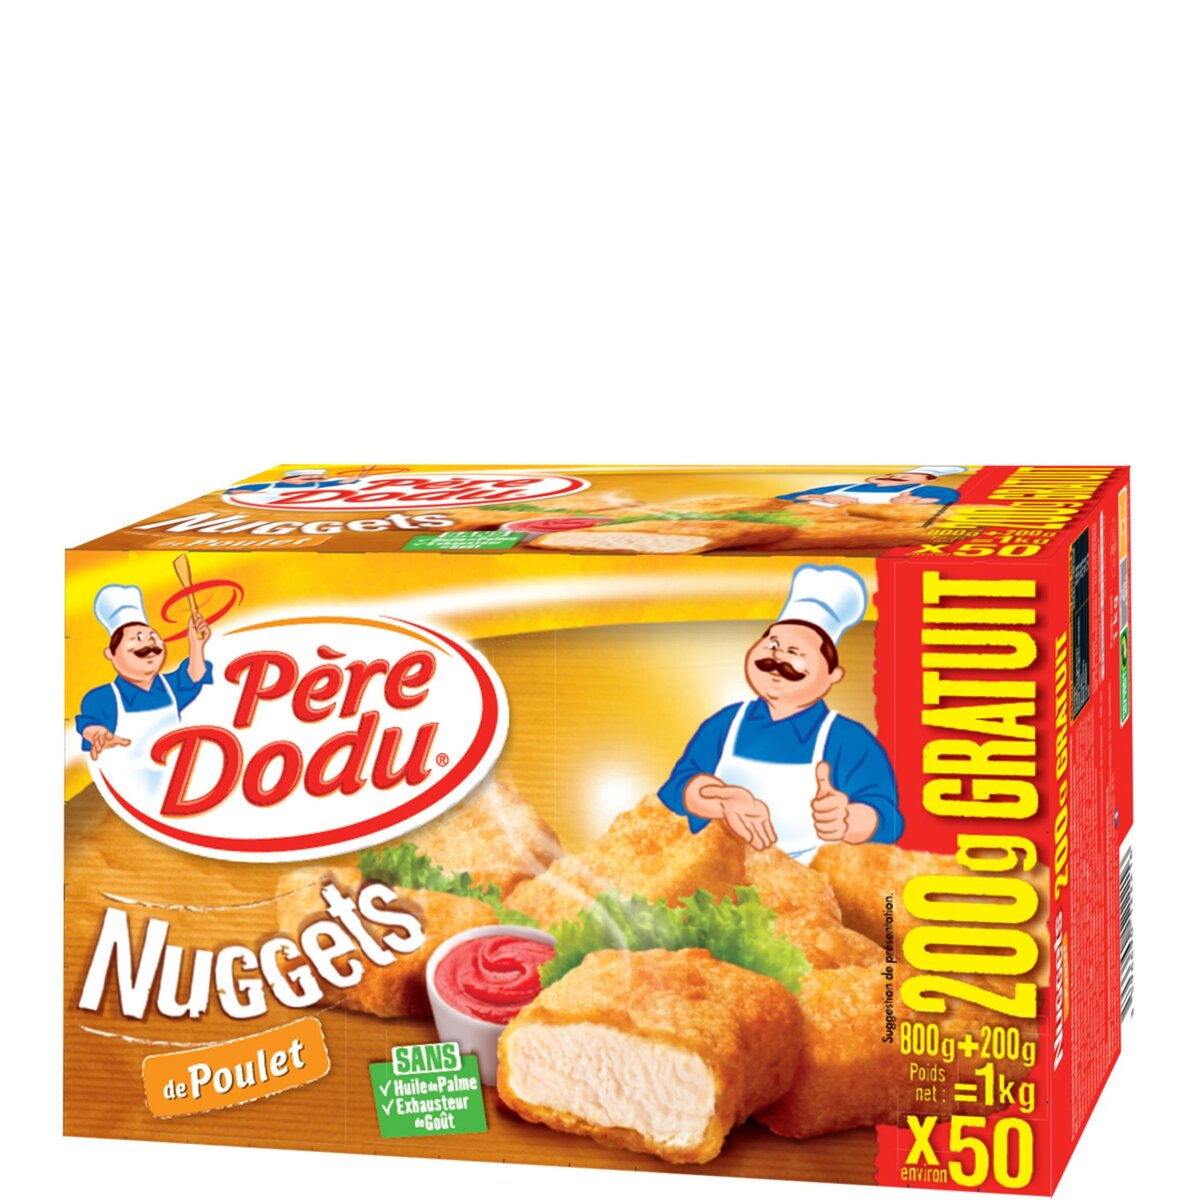 PERE DODU Père Dodu nuggets de poulet 800g +200gt